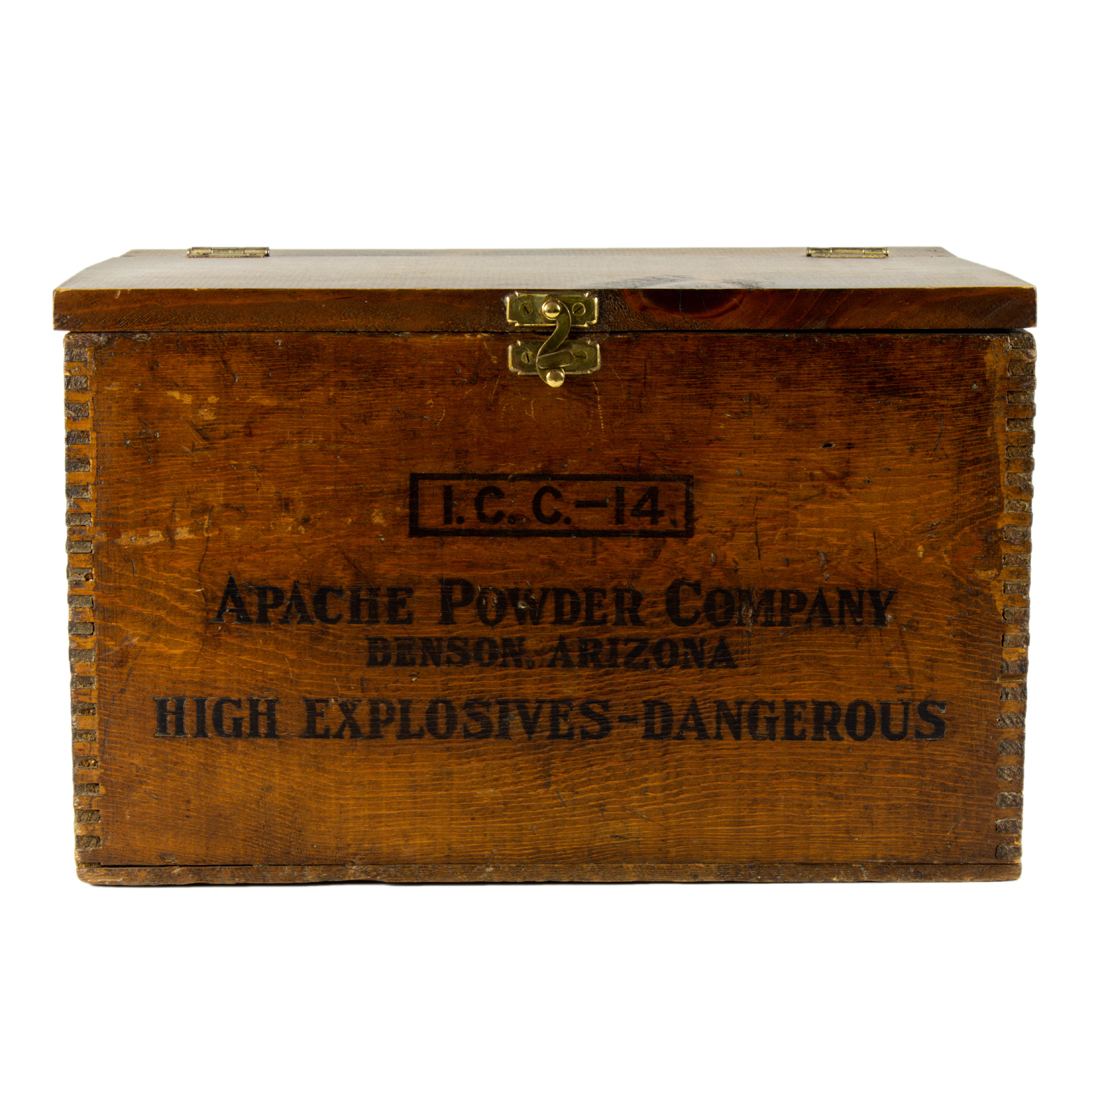 A VINTAGE DYNAMITE BOX A vintage 3a21b1